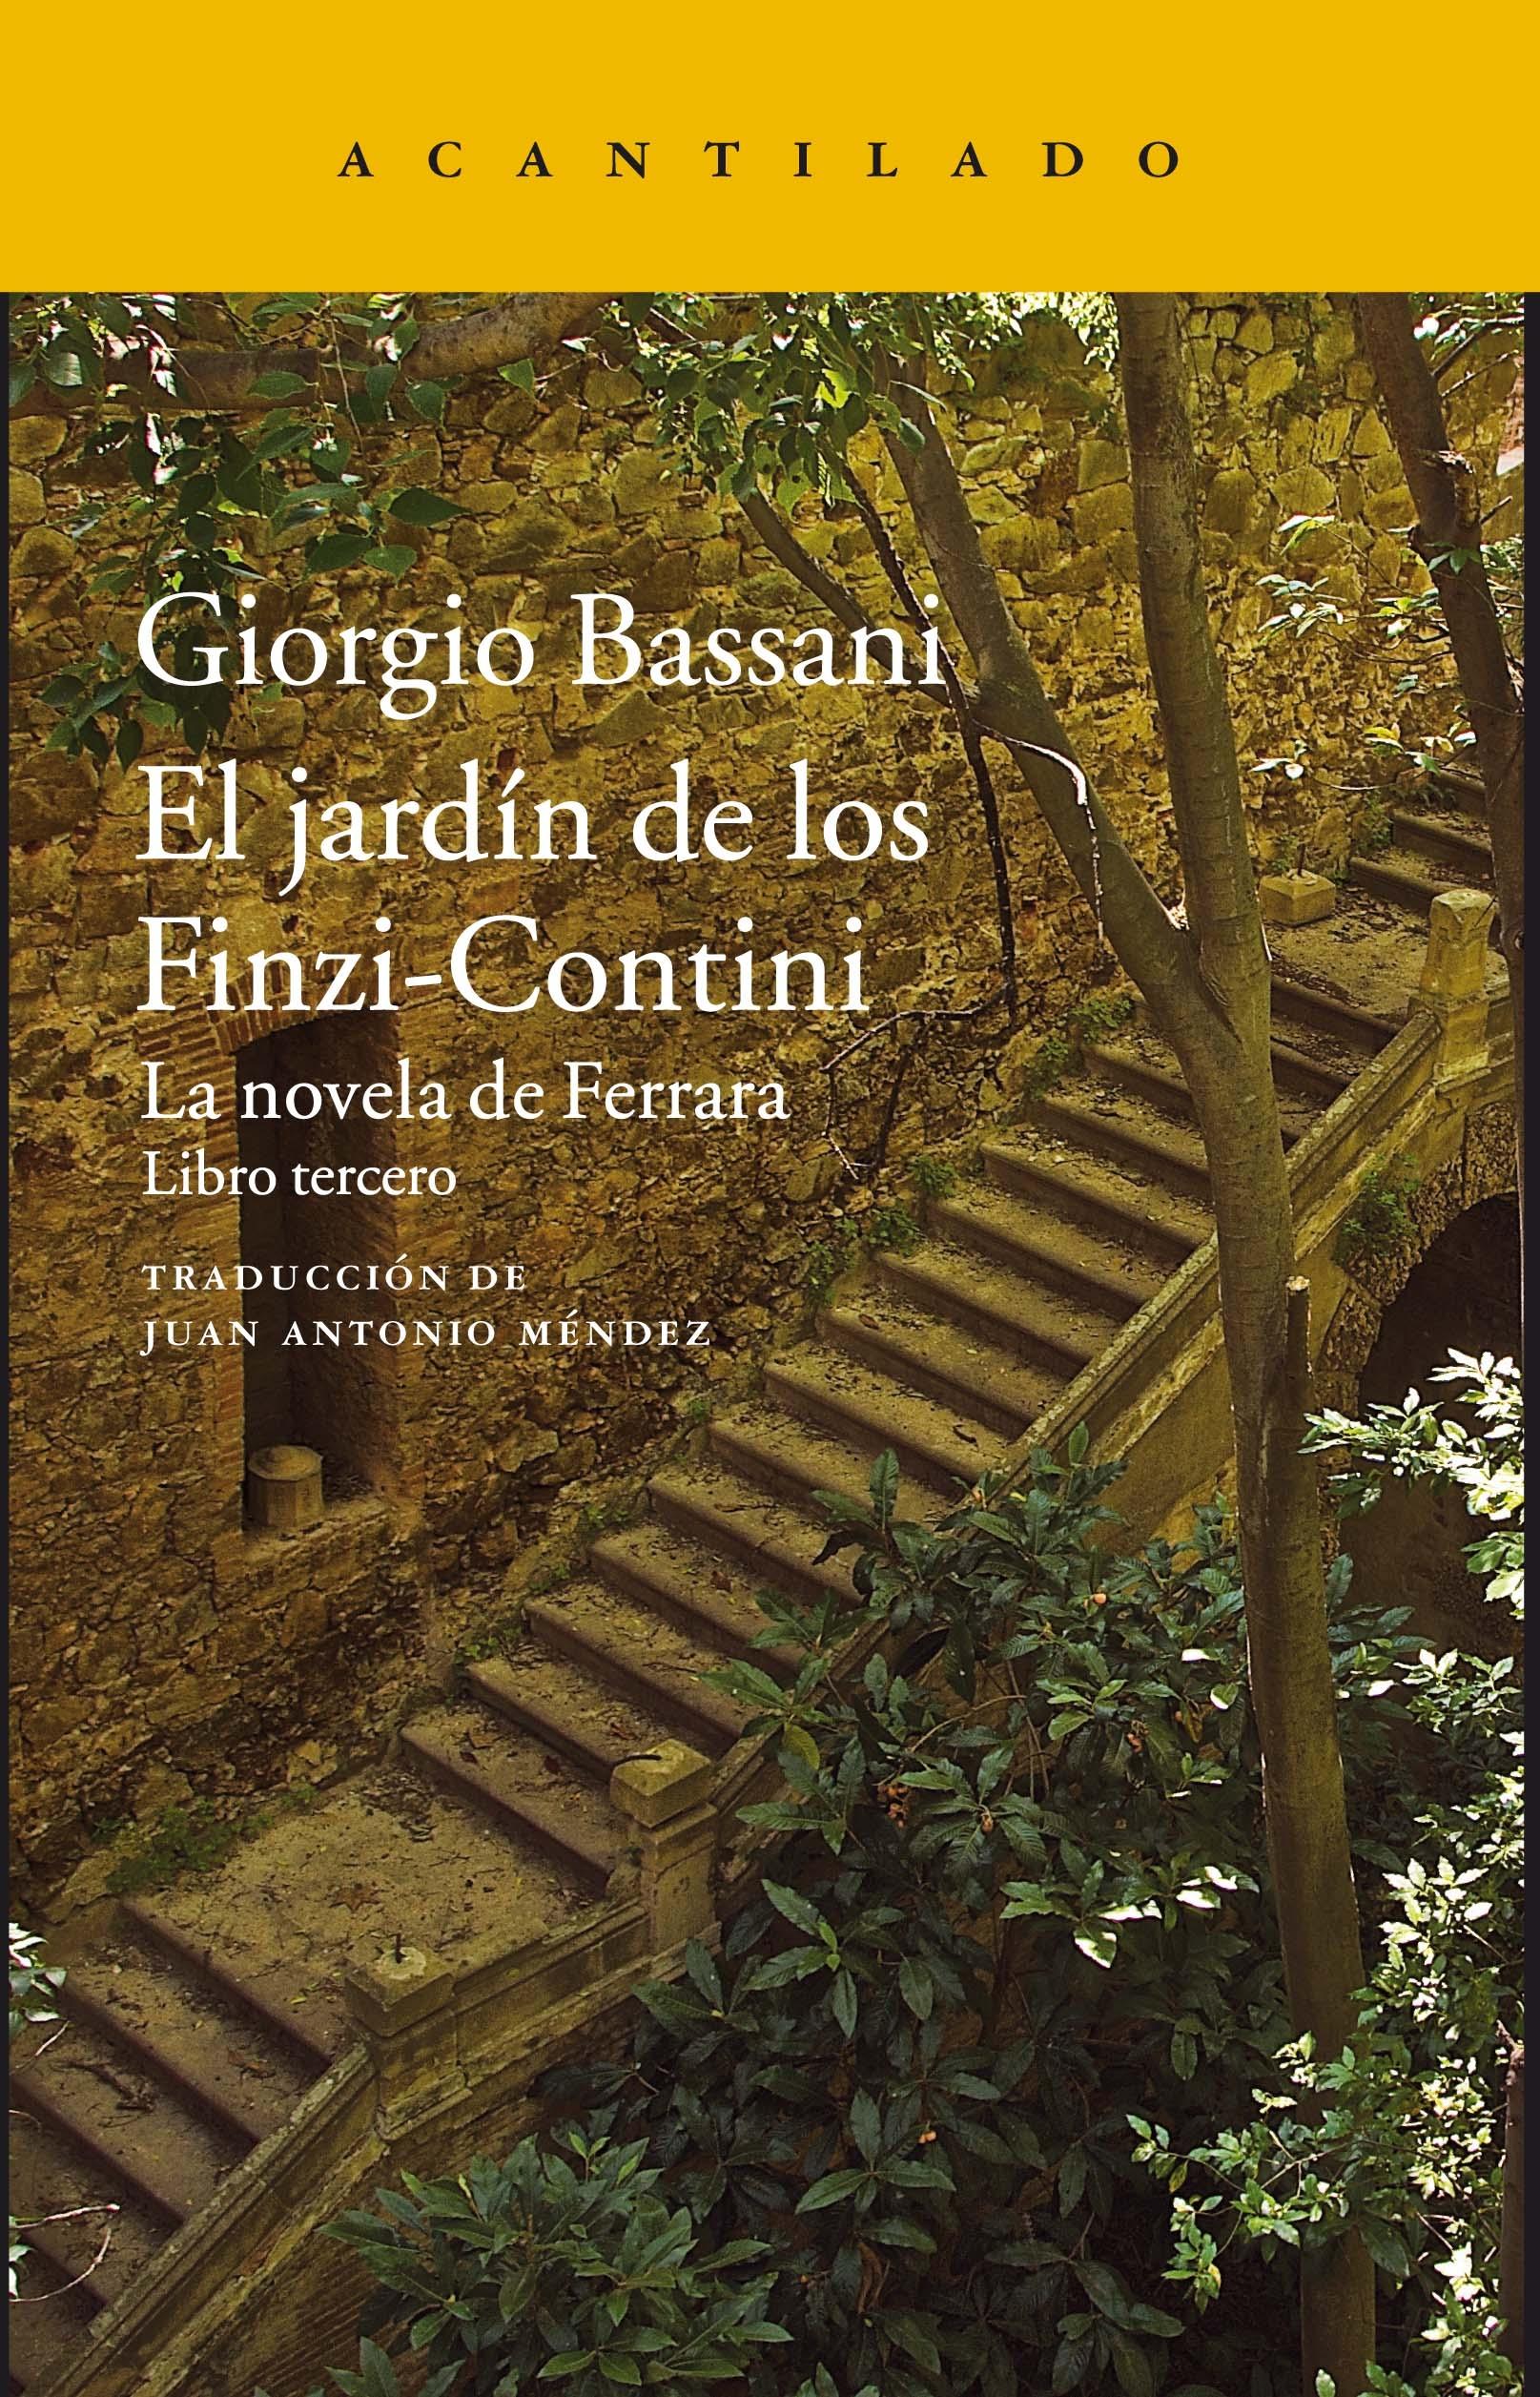 El Jardín de los Finzi-Contini Vol.III "La Novela de Ferrara"